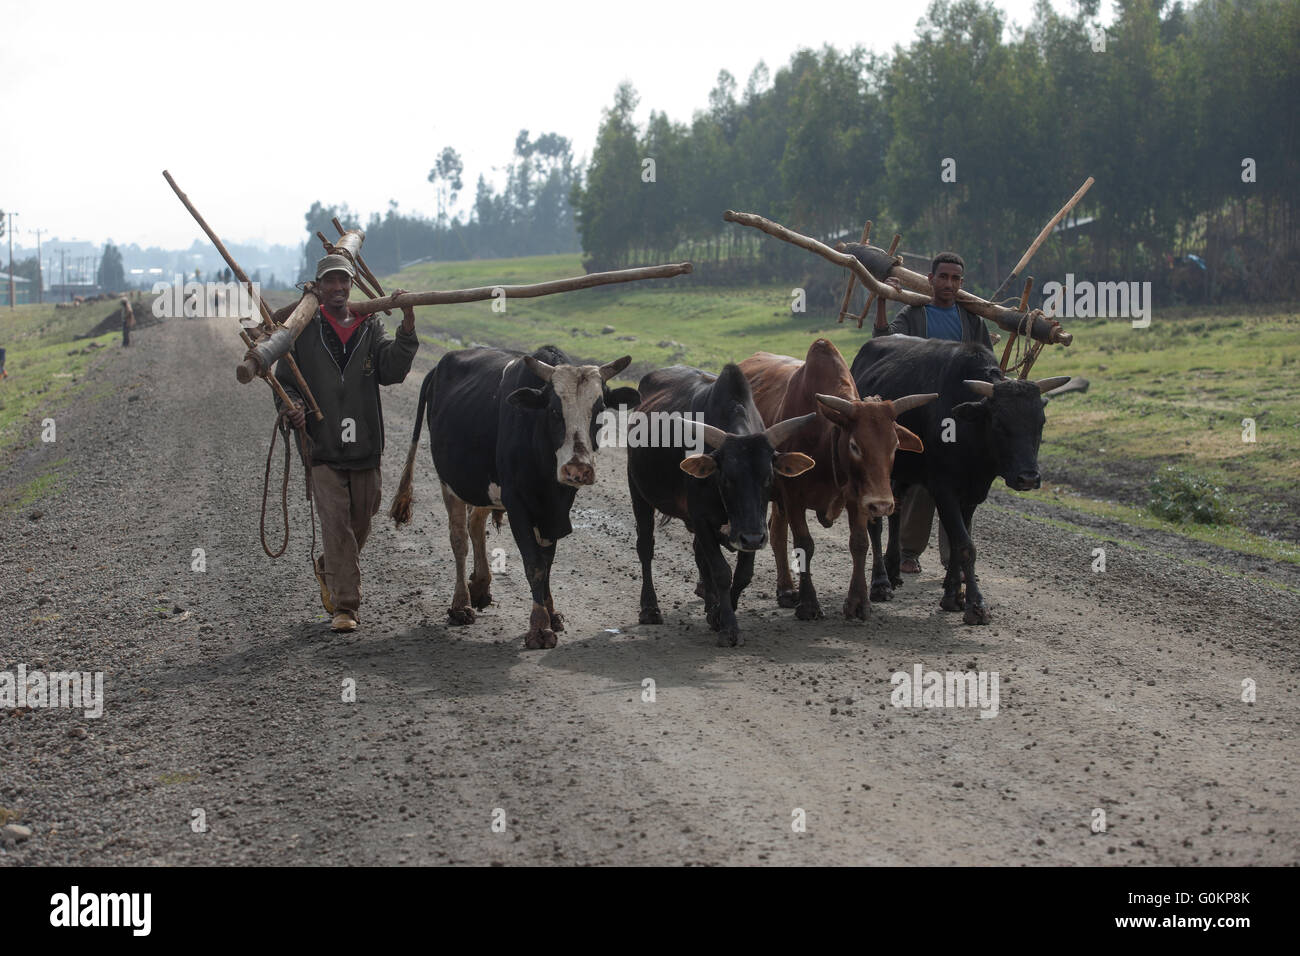 Debre Birhan, Amhara, Ethiopie, octobre 2013 Les agriculteurs portent leurs charrues sur le chemin du travail dans leurs champs avec leurs boeufs. Photographie par Mike Goldwater Banque D'Images